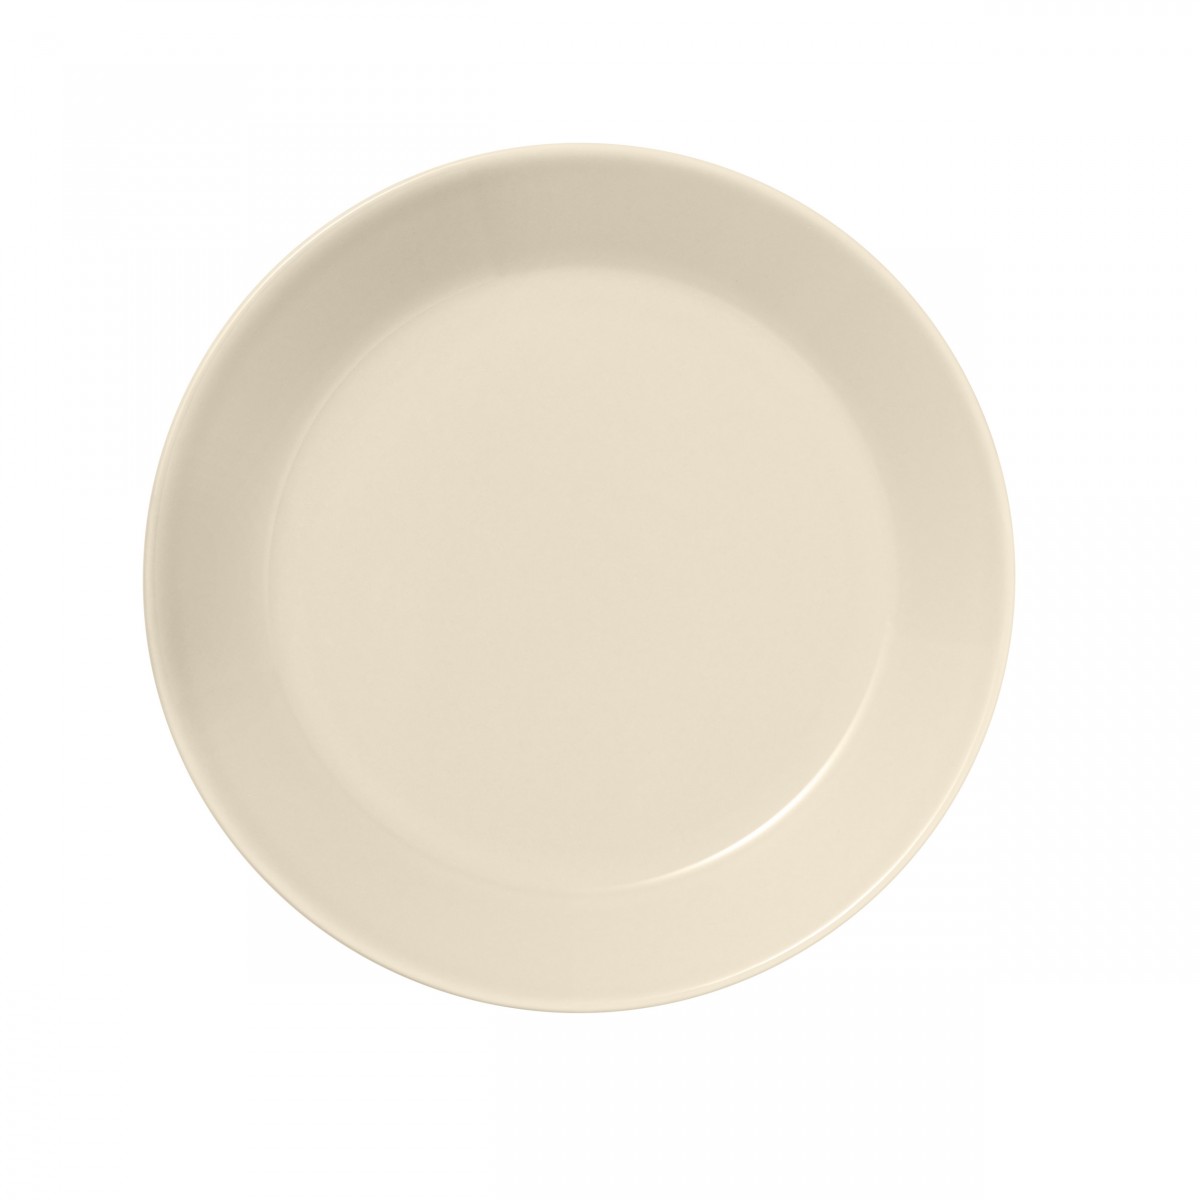 Ø17cm - Teema plate - linen - 1059146